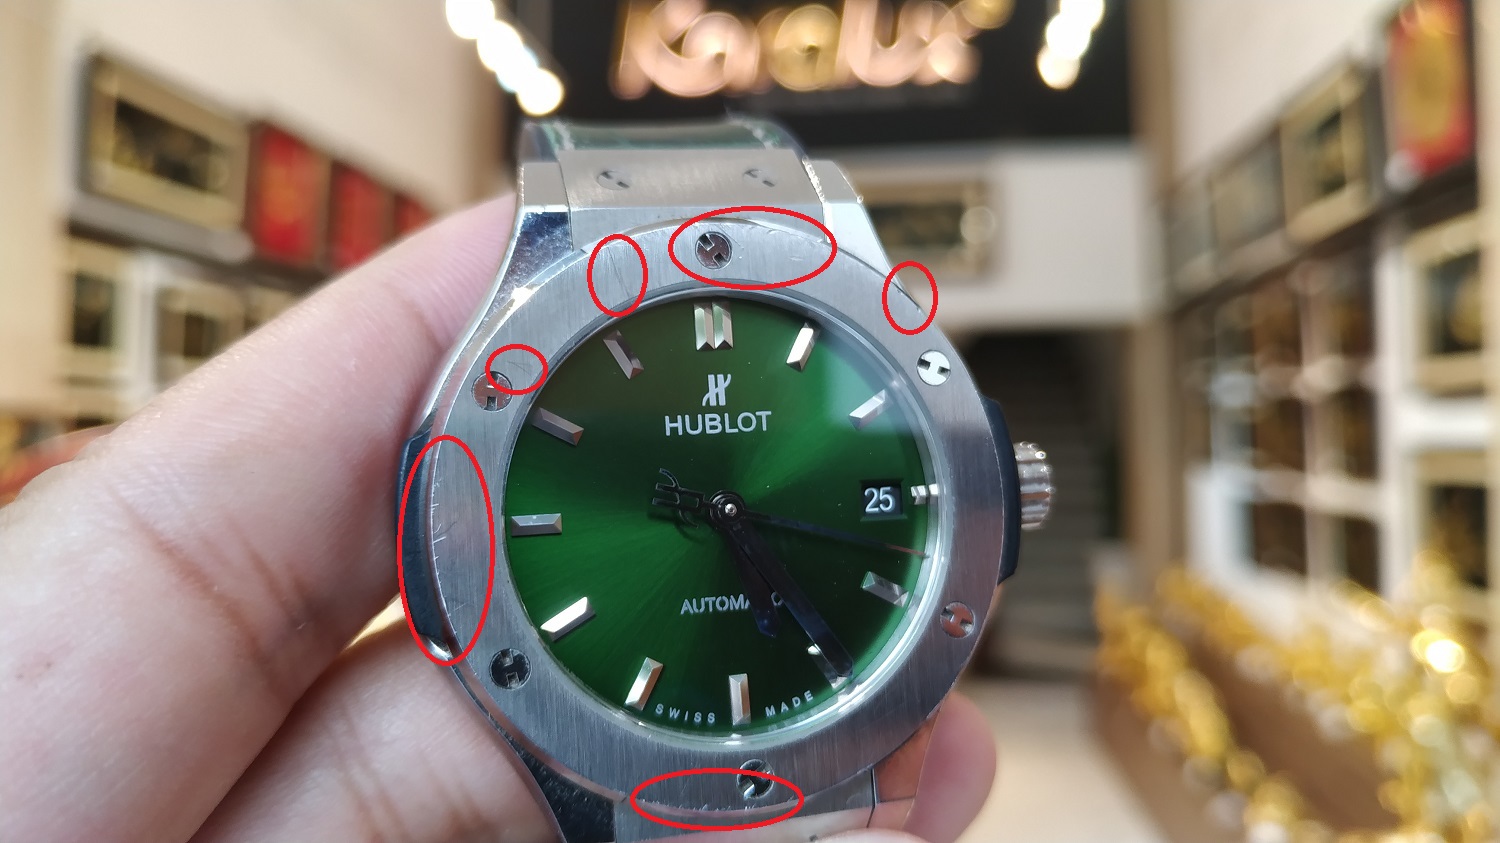 Đồng hồ cũ Hublot với nhiều vết xước trên bề mặt trong quá trình sử dụng